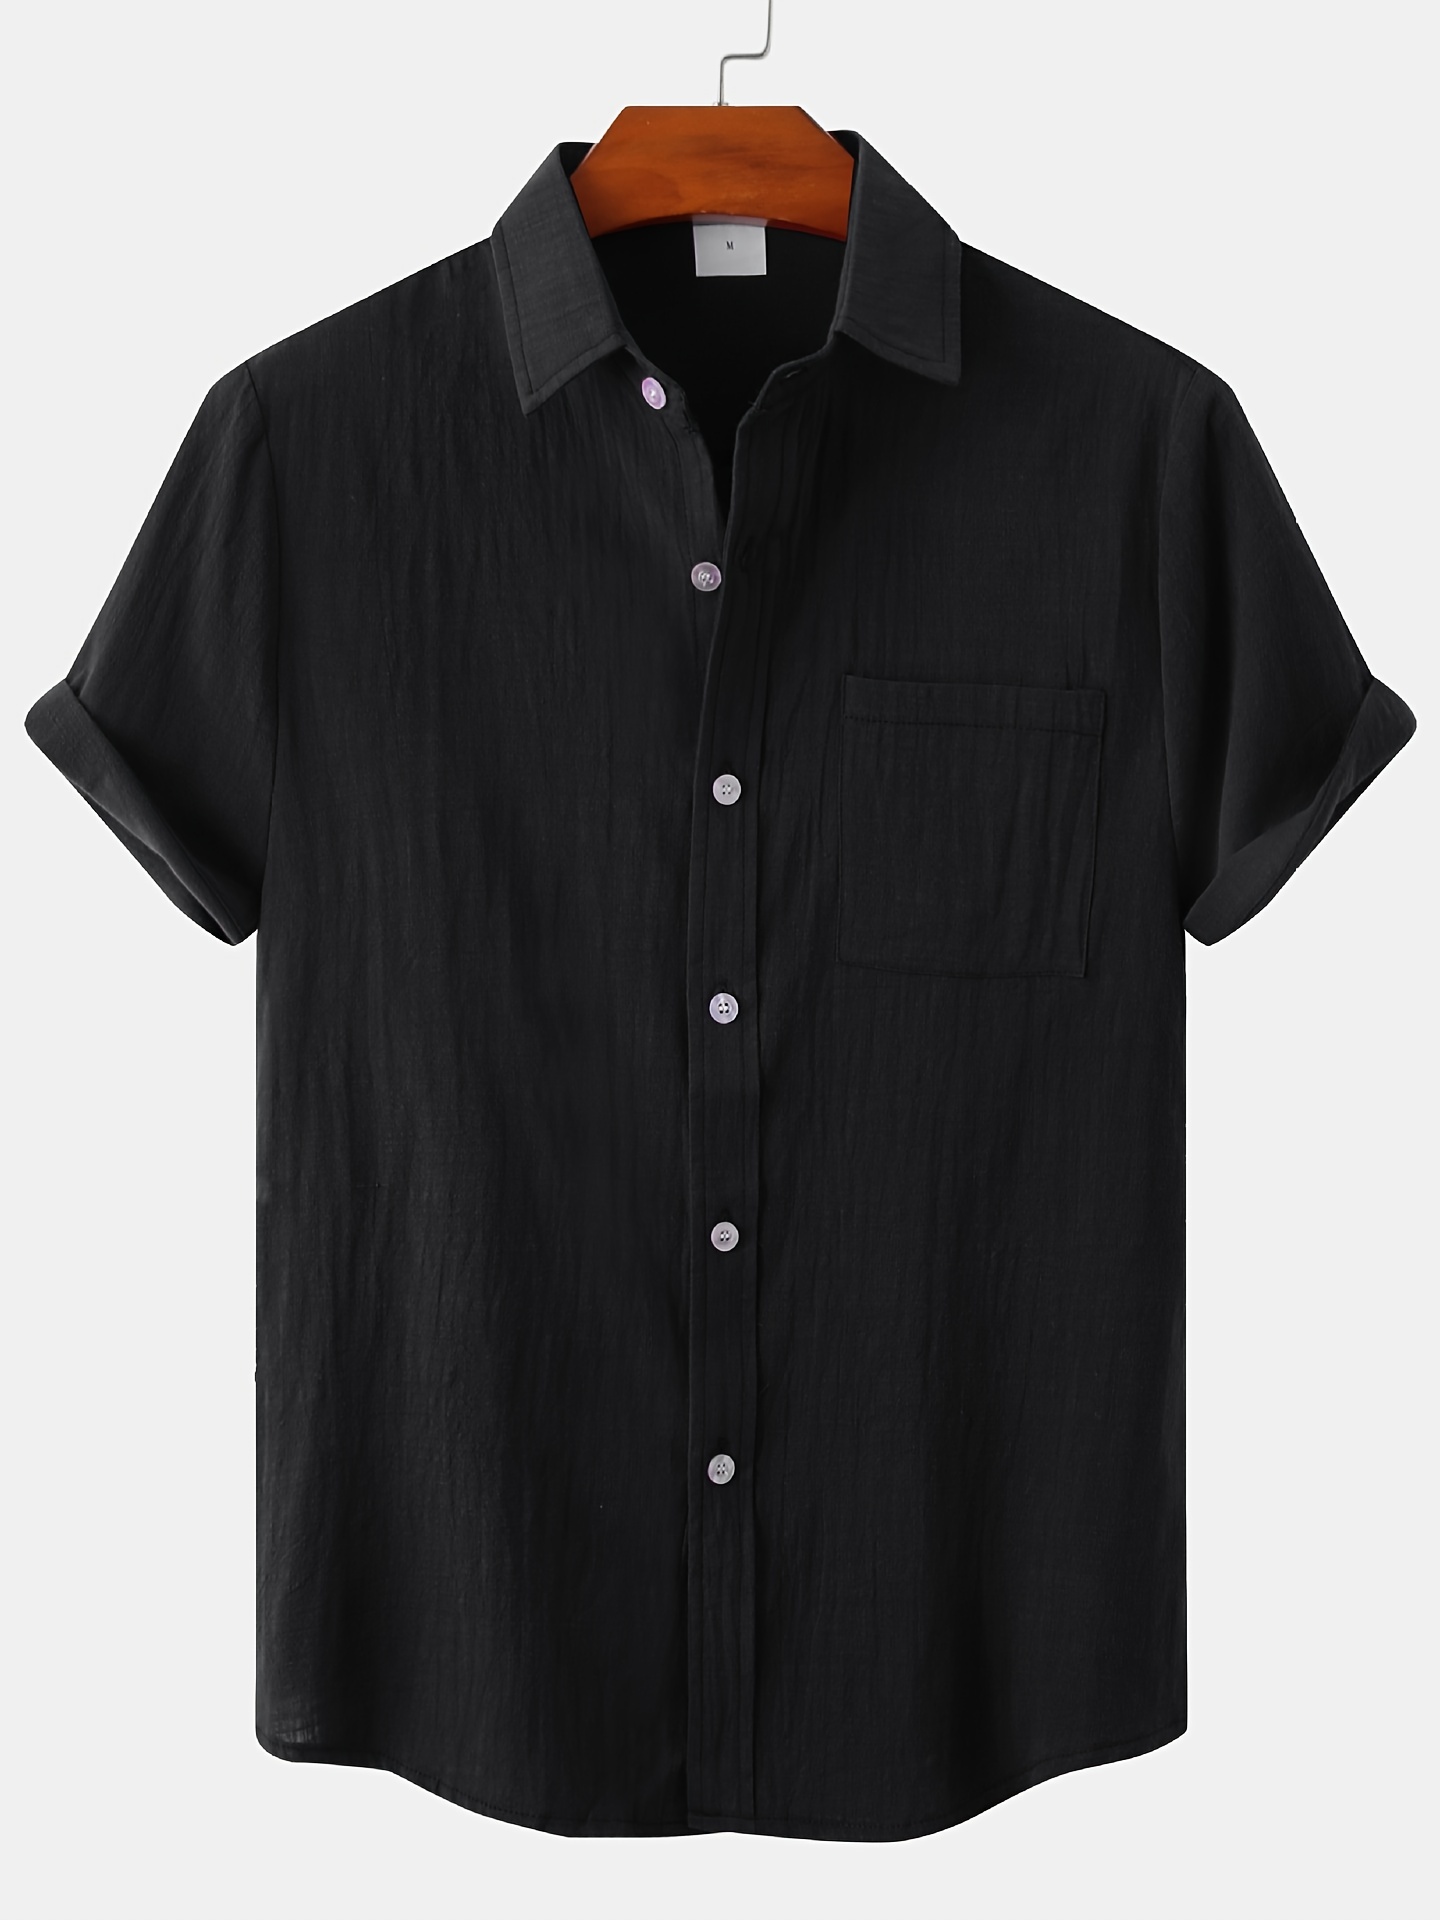 Shein Men's Standard Fit Short Sleeve Linen Cotton Shirt - China